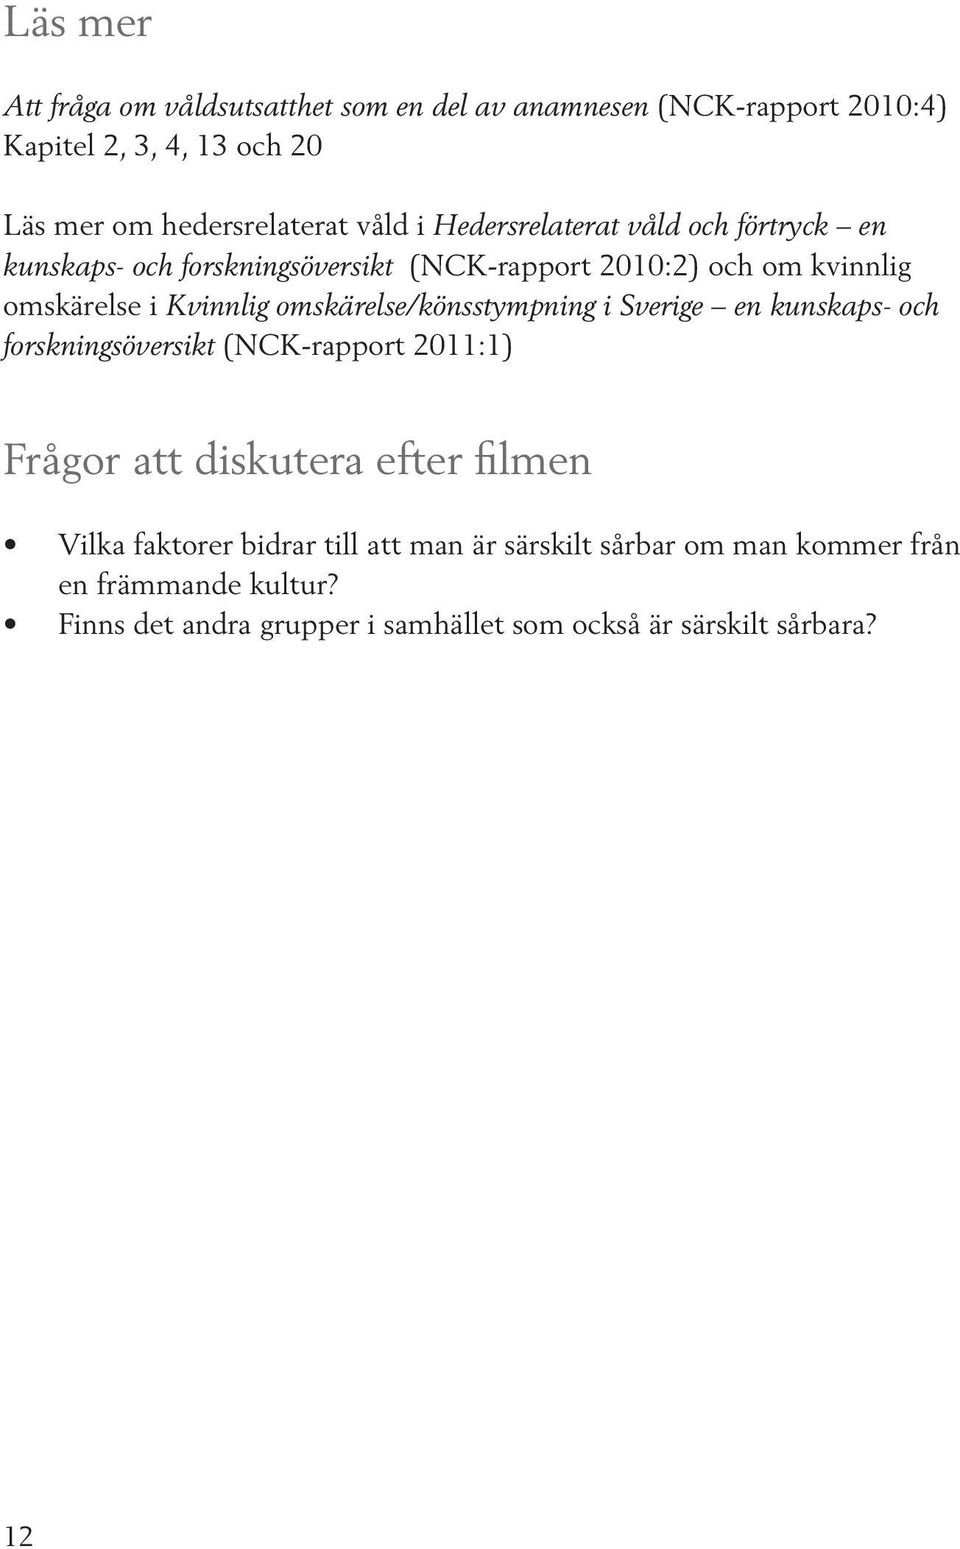 omskärelse/könsstympning i Sverige en kunskaps- och forskningsöversikt (NCK-rapport 2011:1) Frågor att diskutera efter filmen Vilka